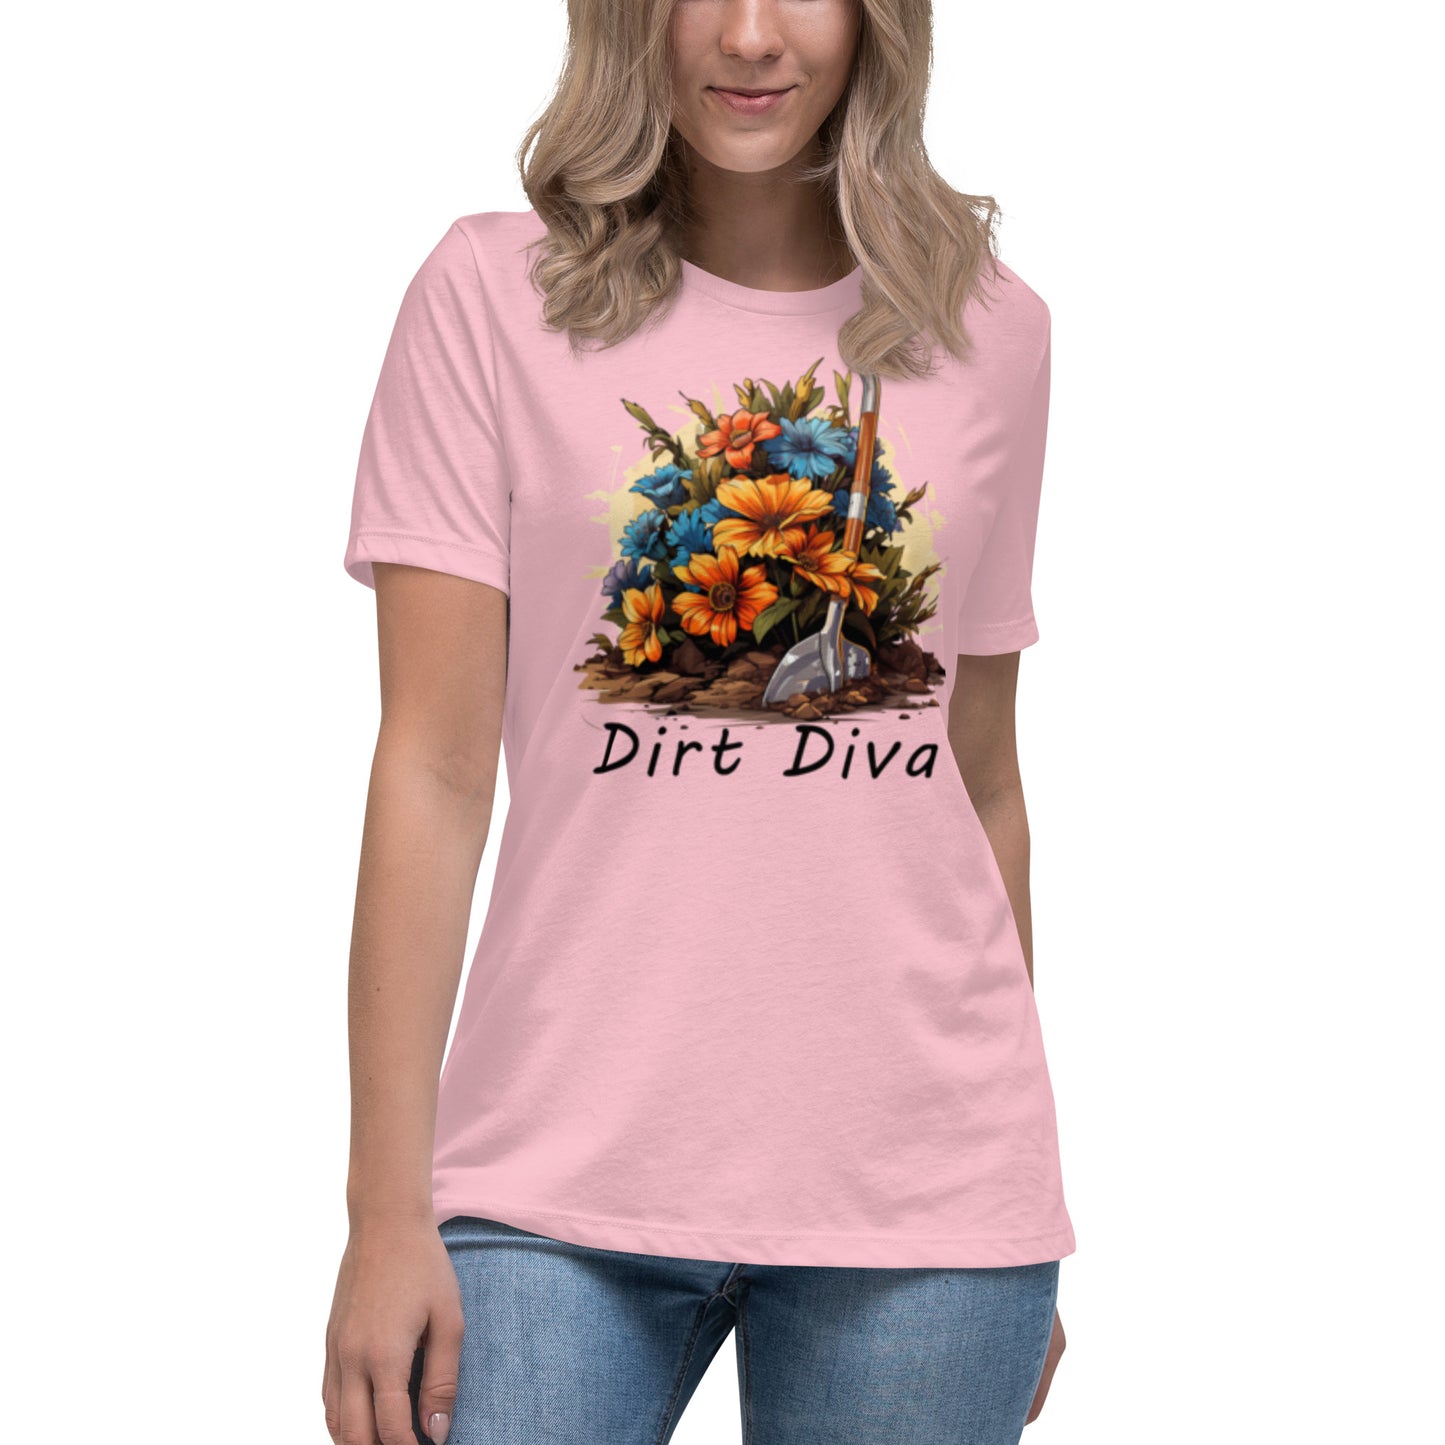 Dirt Diva Women's Relaxed T-Shirt